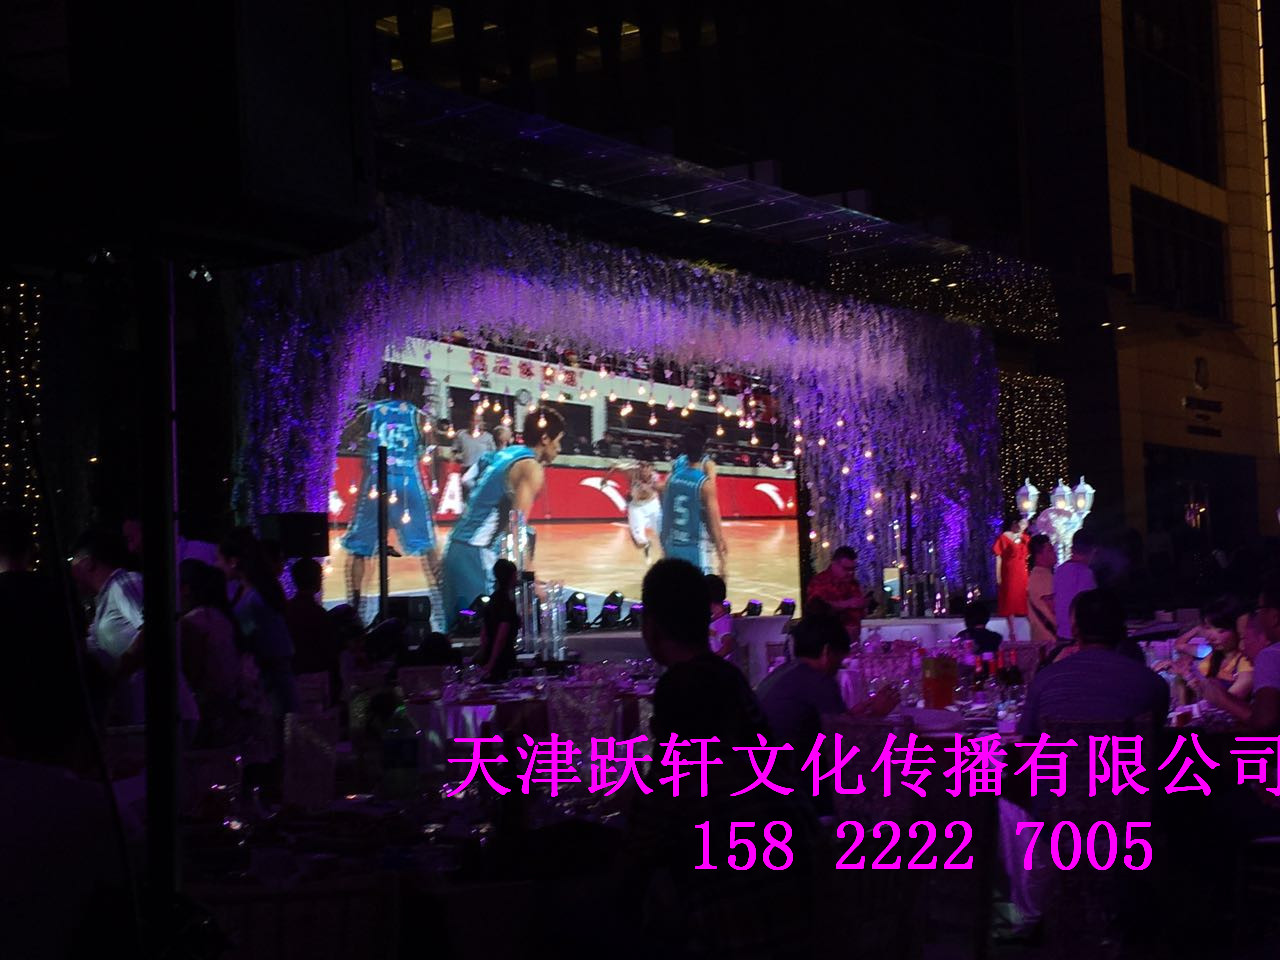 天津LED显示屏出租  LED大屏租赁价格平民 中低端市场竞争加剧图片